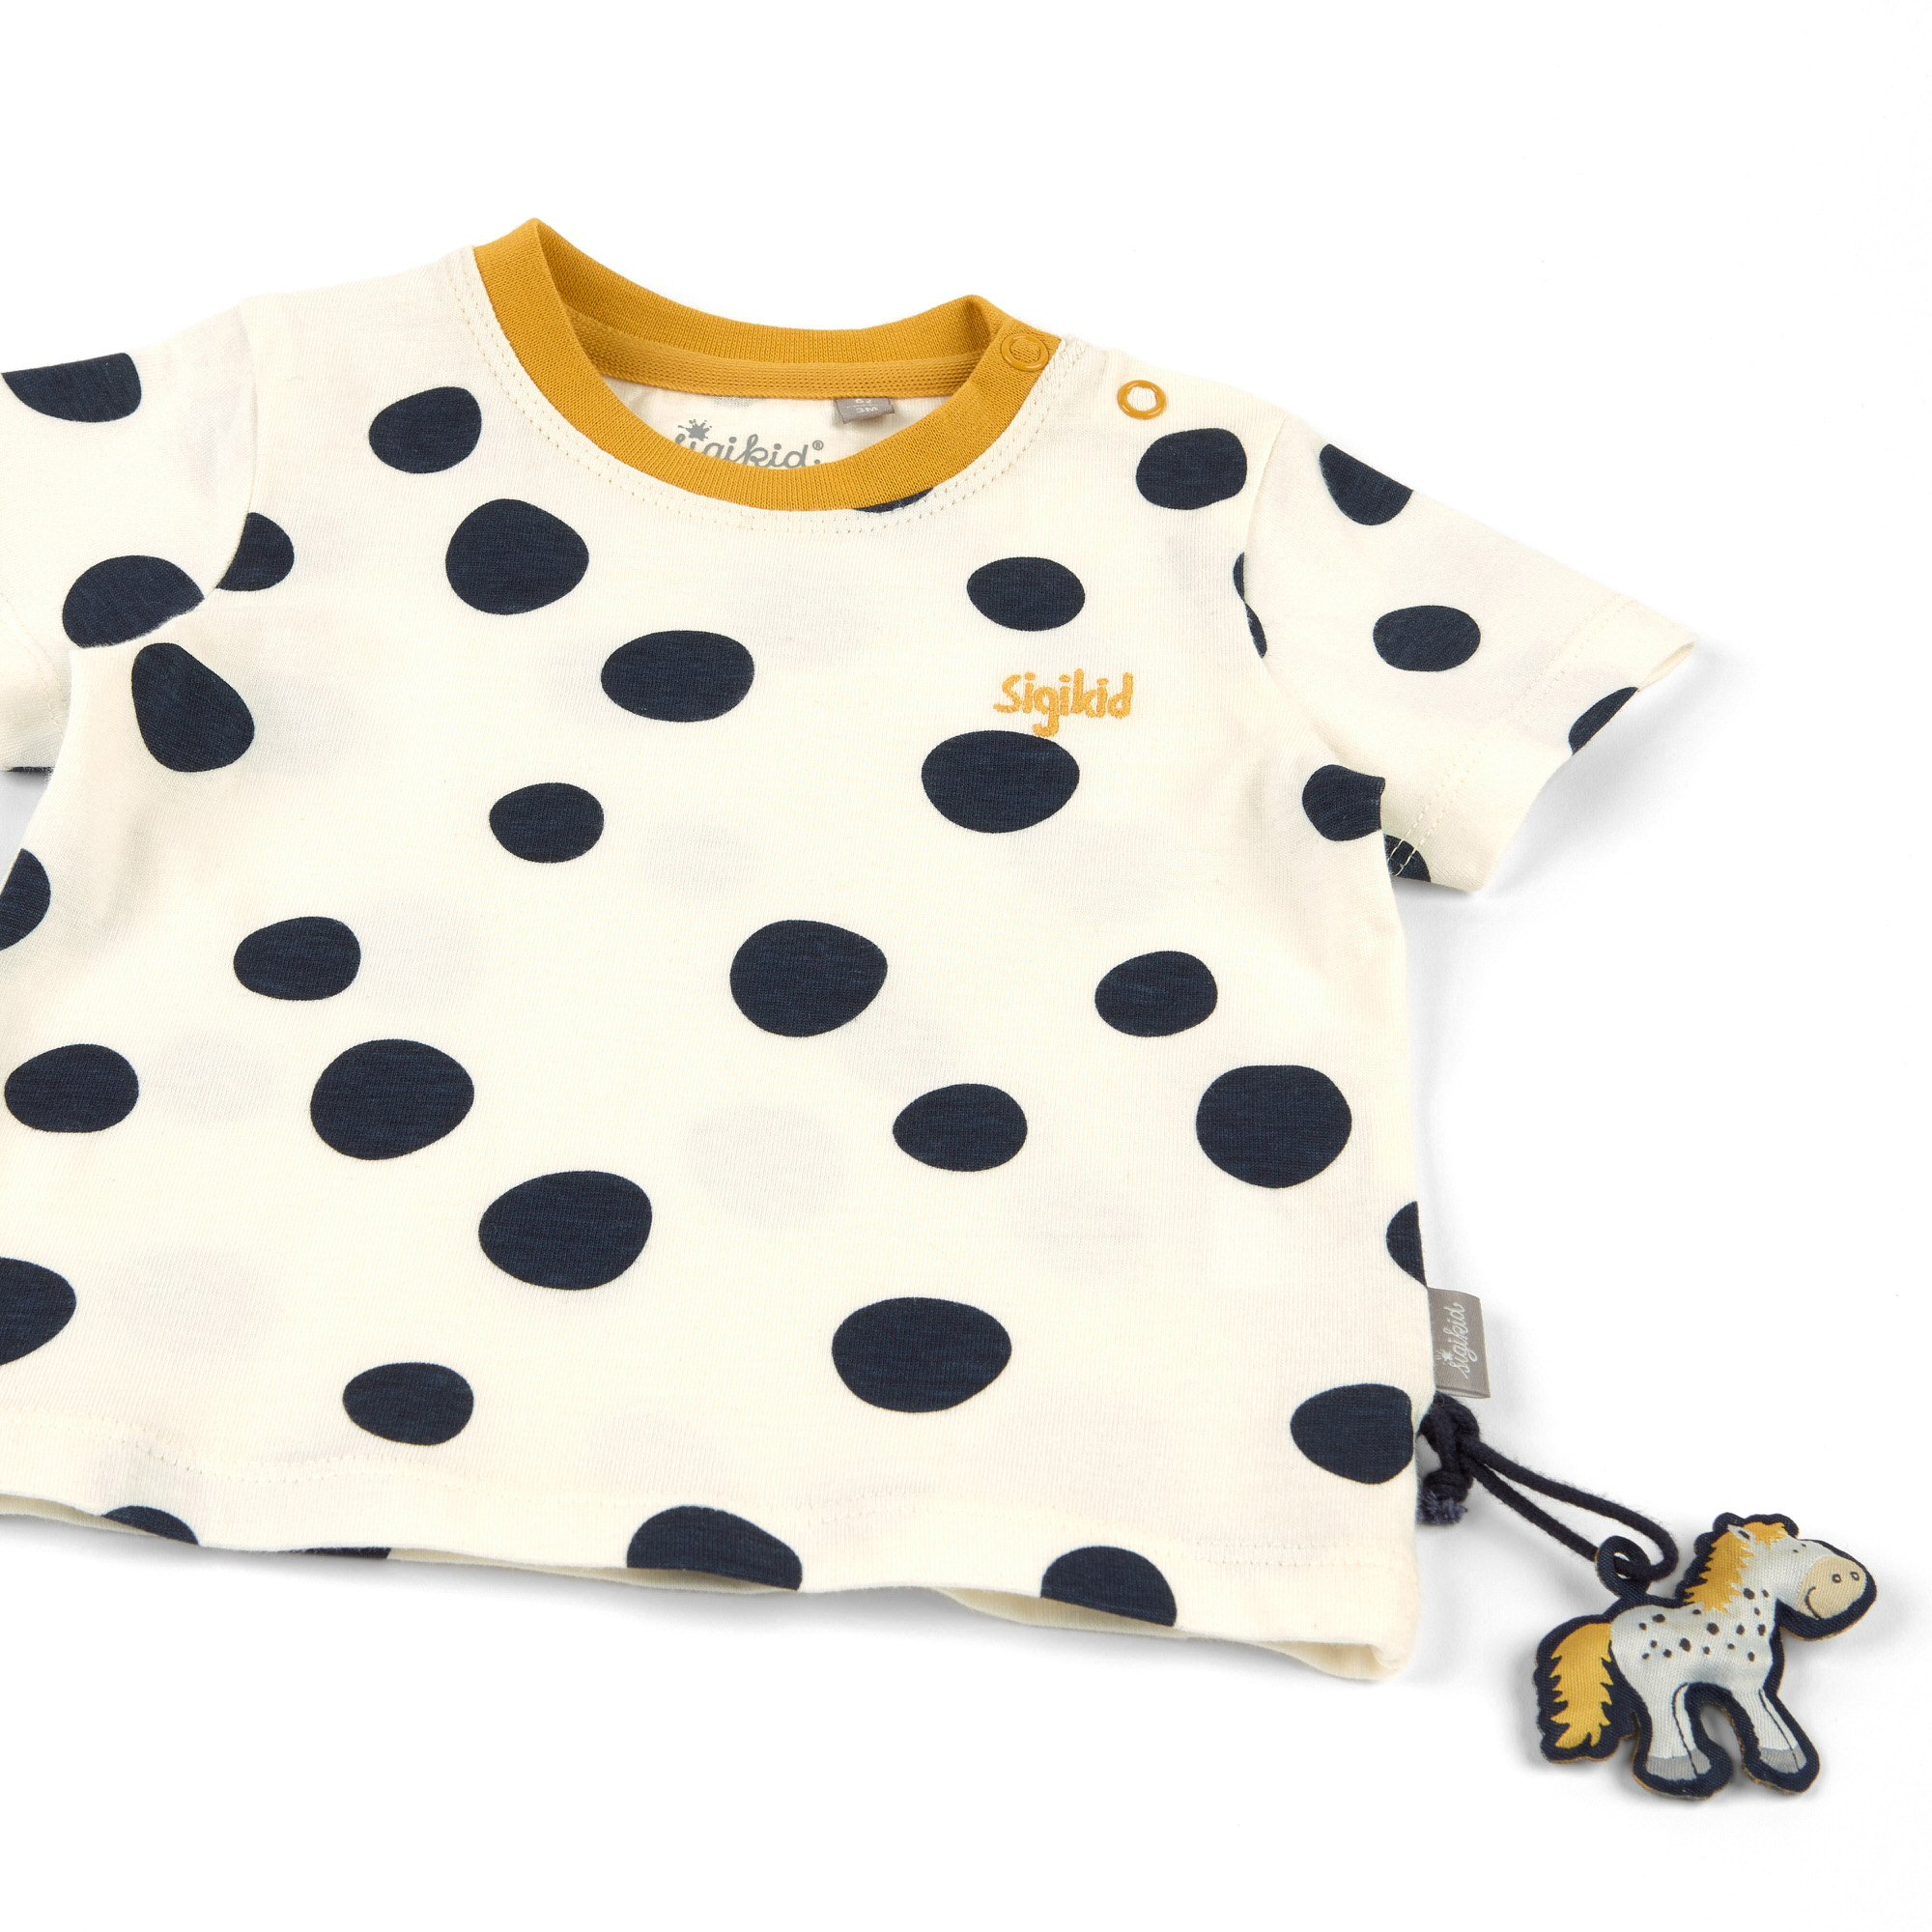 Cream white baby T-shirt, navy dots